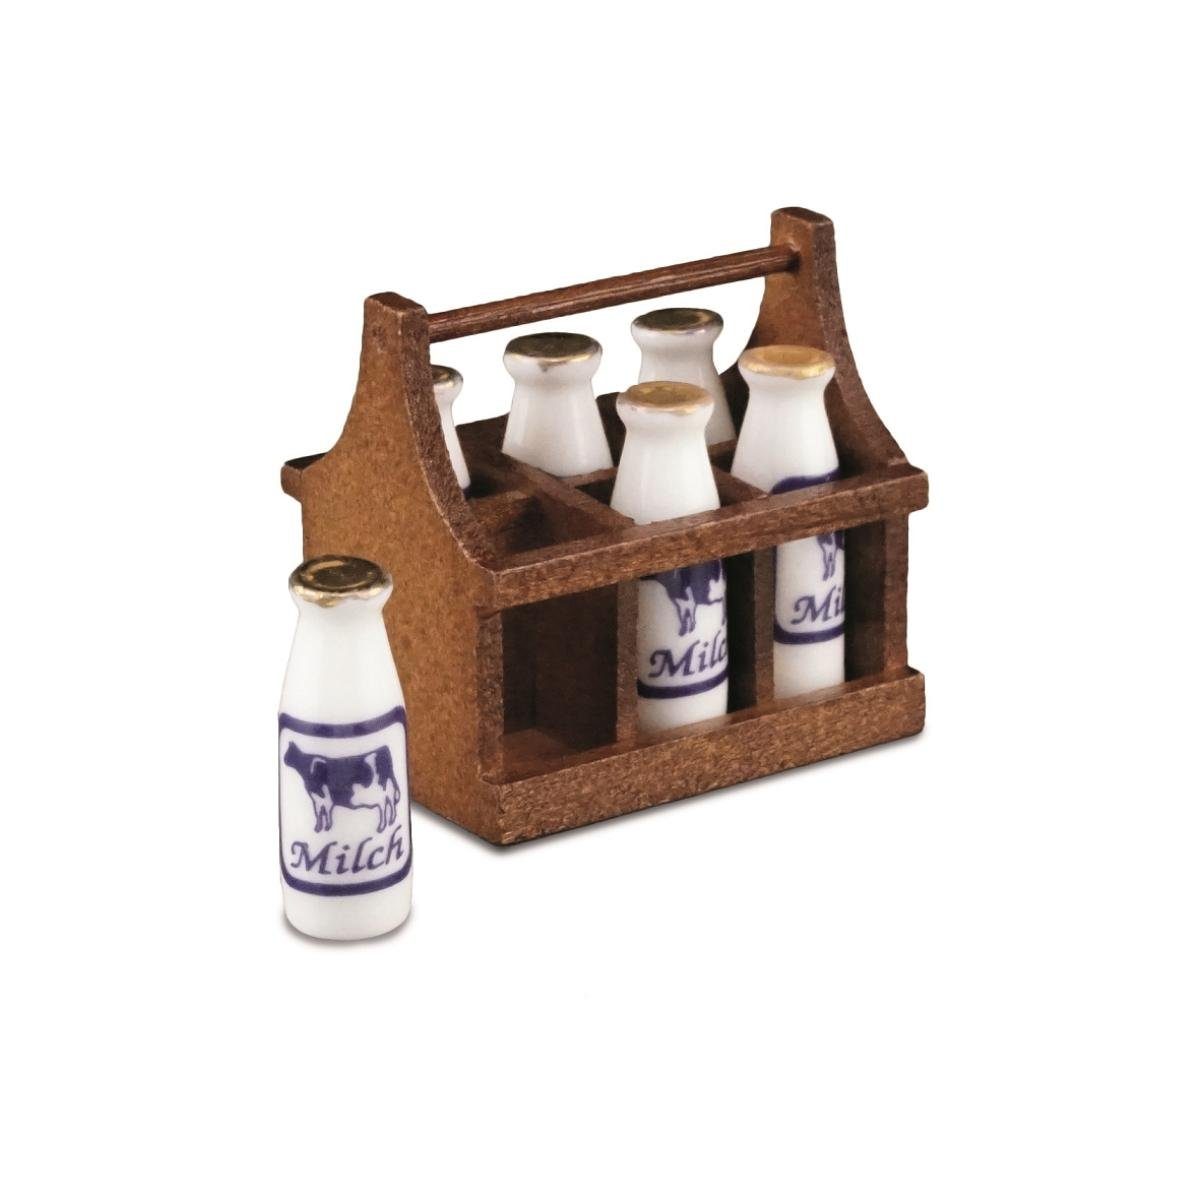 Reutter Porzellan aus Dekofigur 001.413/5 Milchflaschenträger - Miniatur Holz